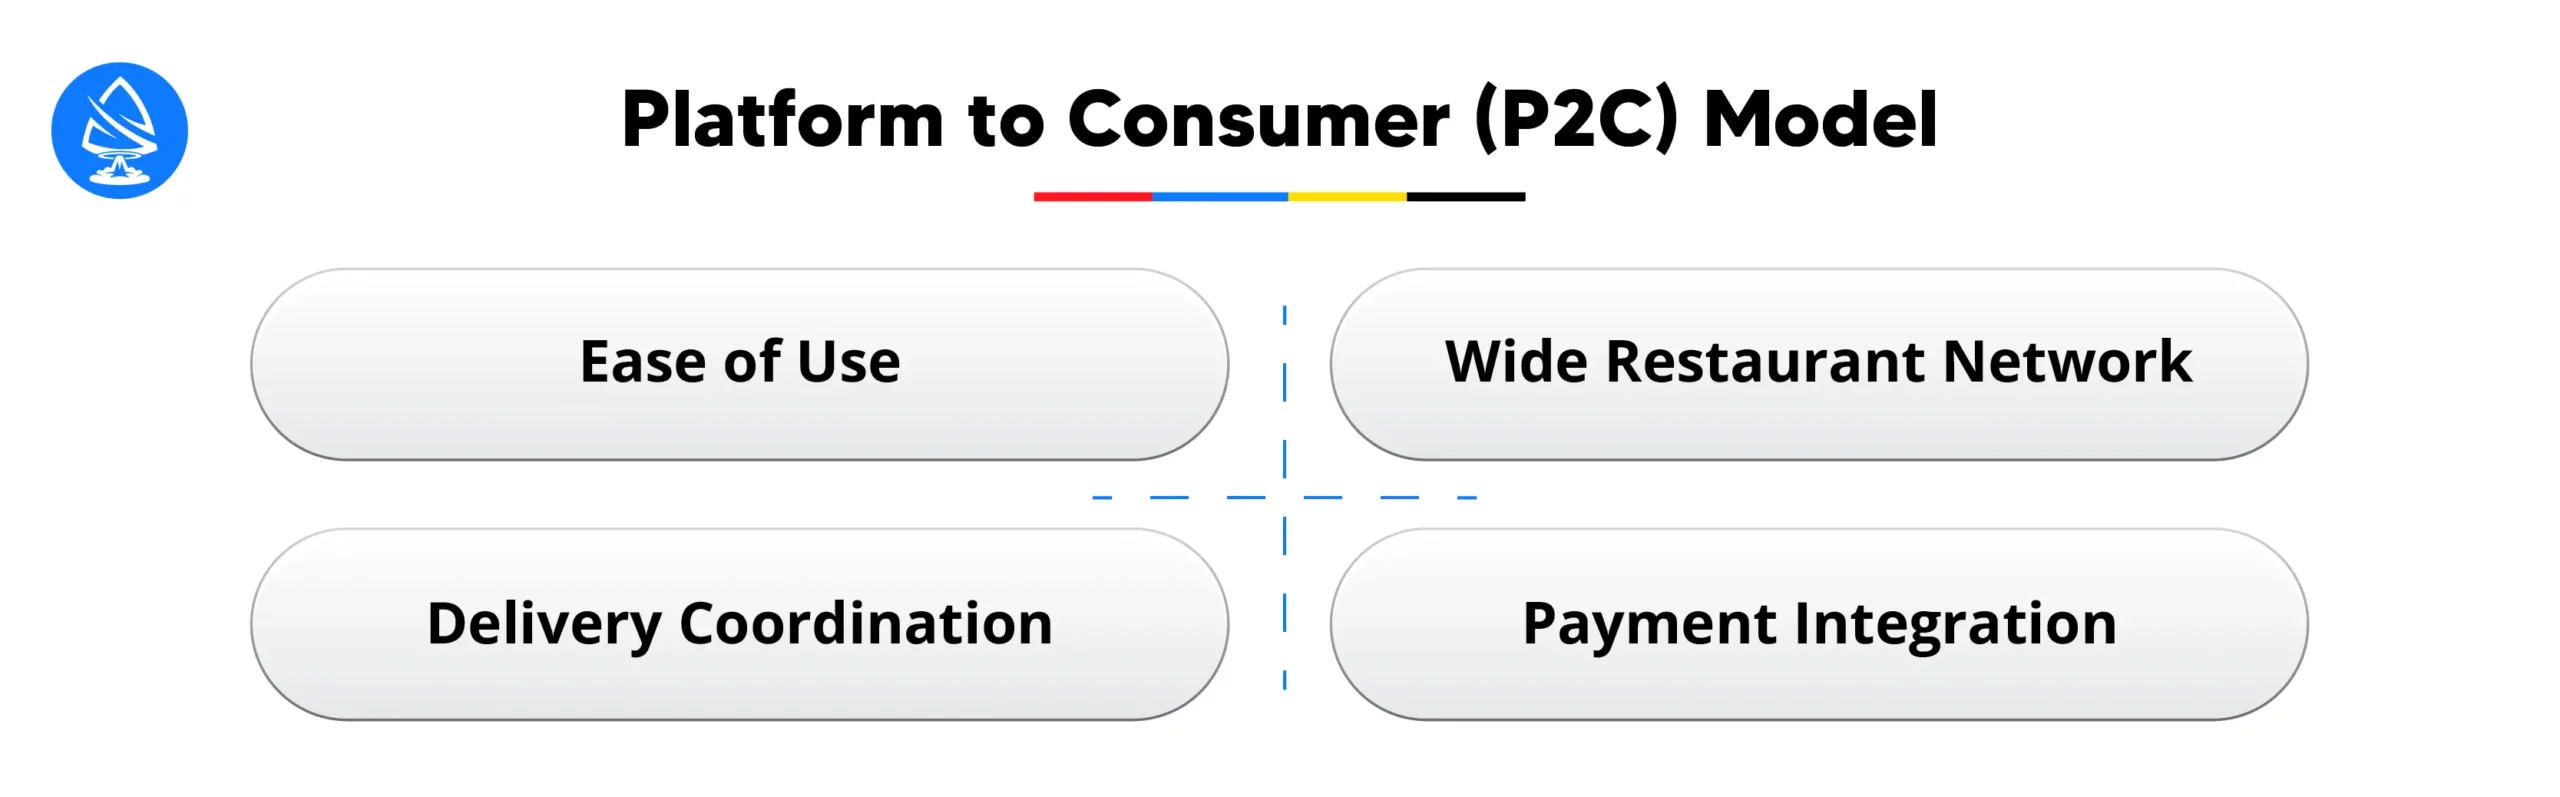 Platform to Consumer (P2C) Model